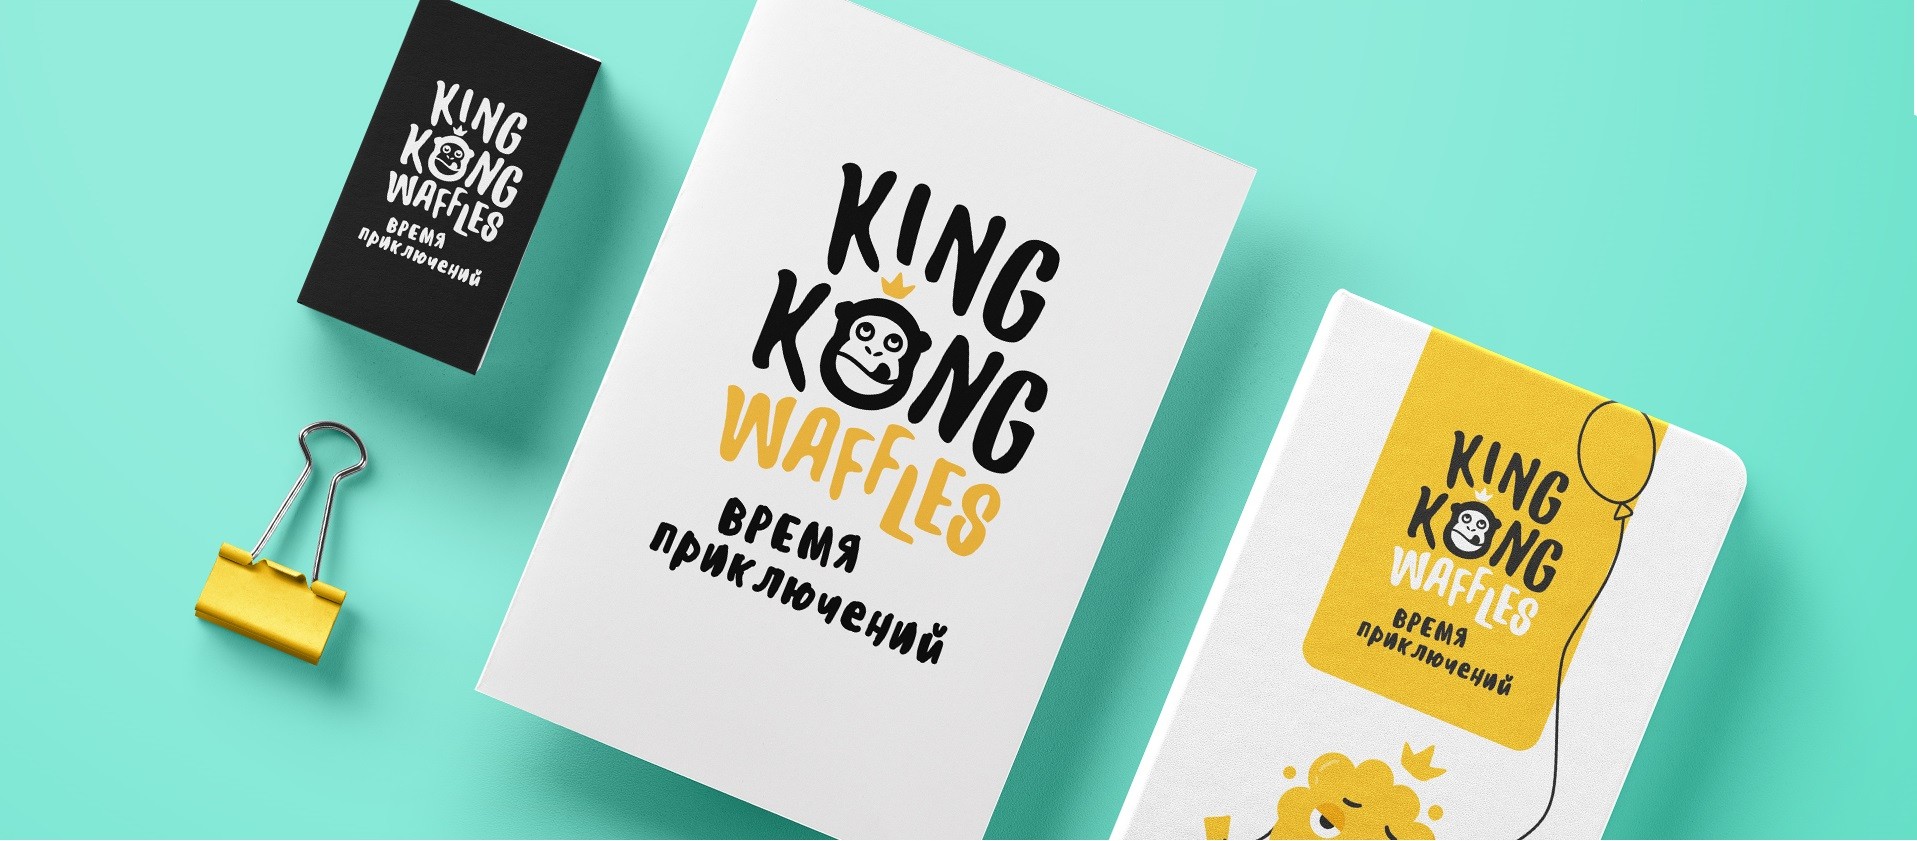 Фото №2: King-Kong Waffles - Разработка логотипа и создание бренда в студии брендинга Rocketmen Agency